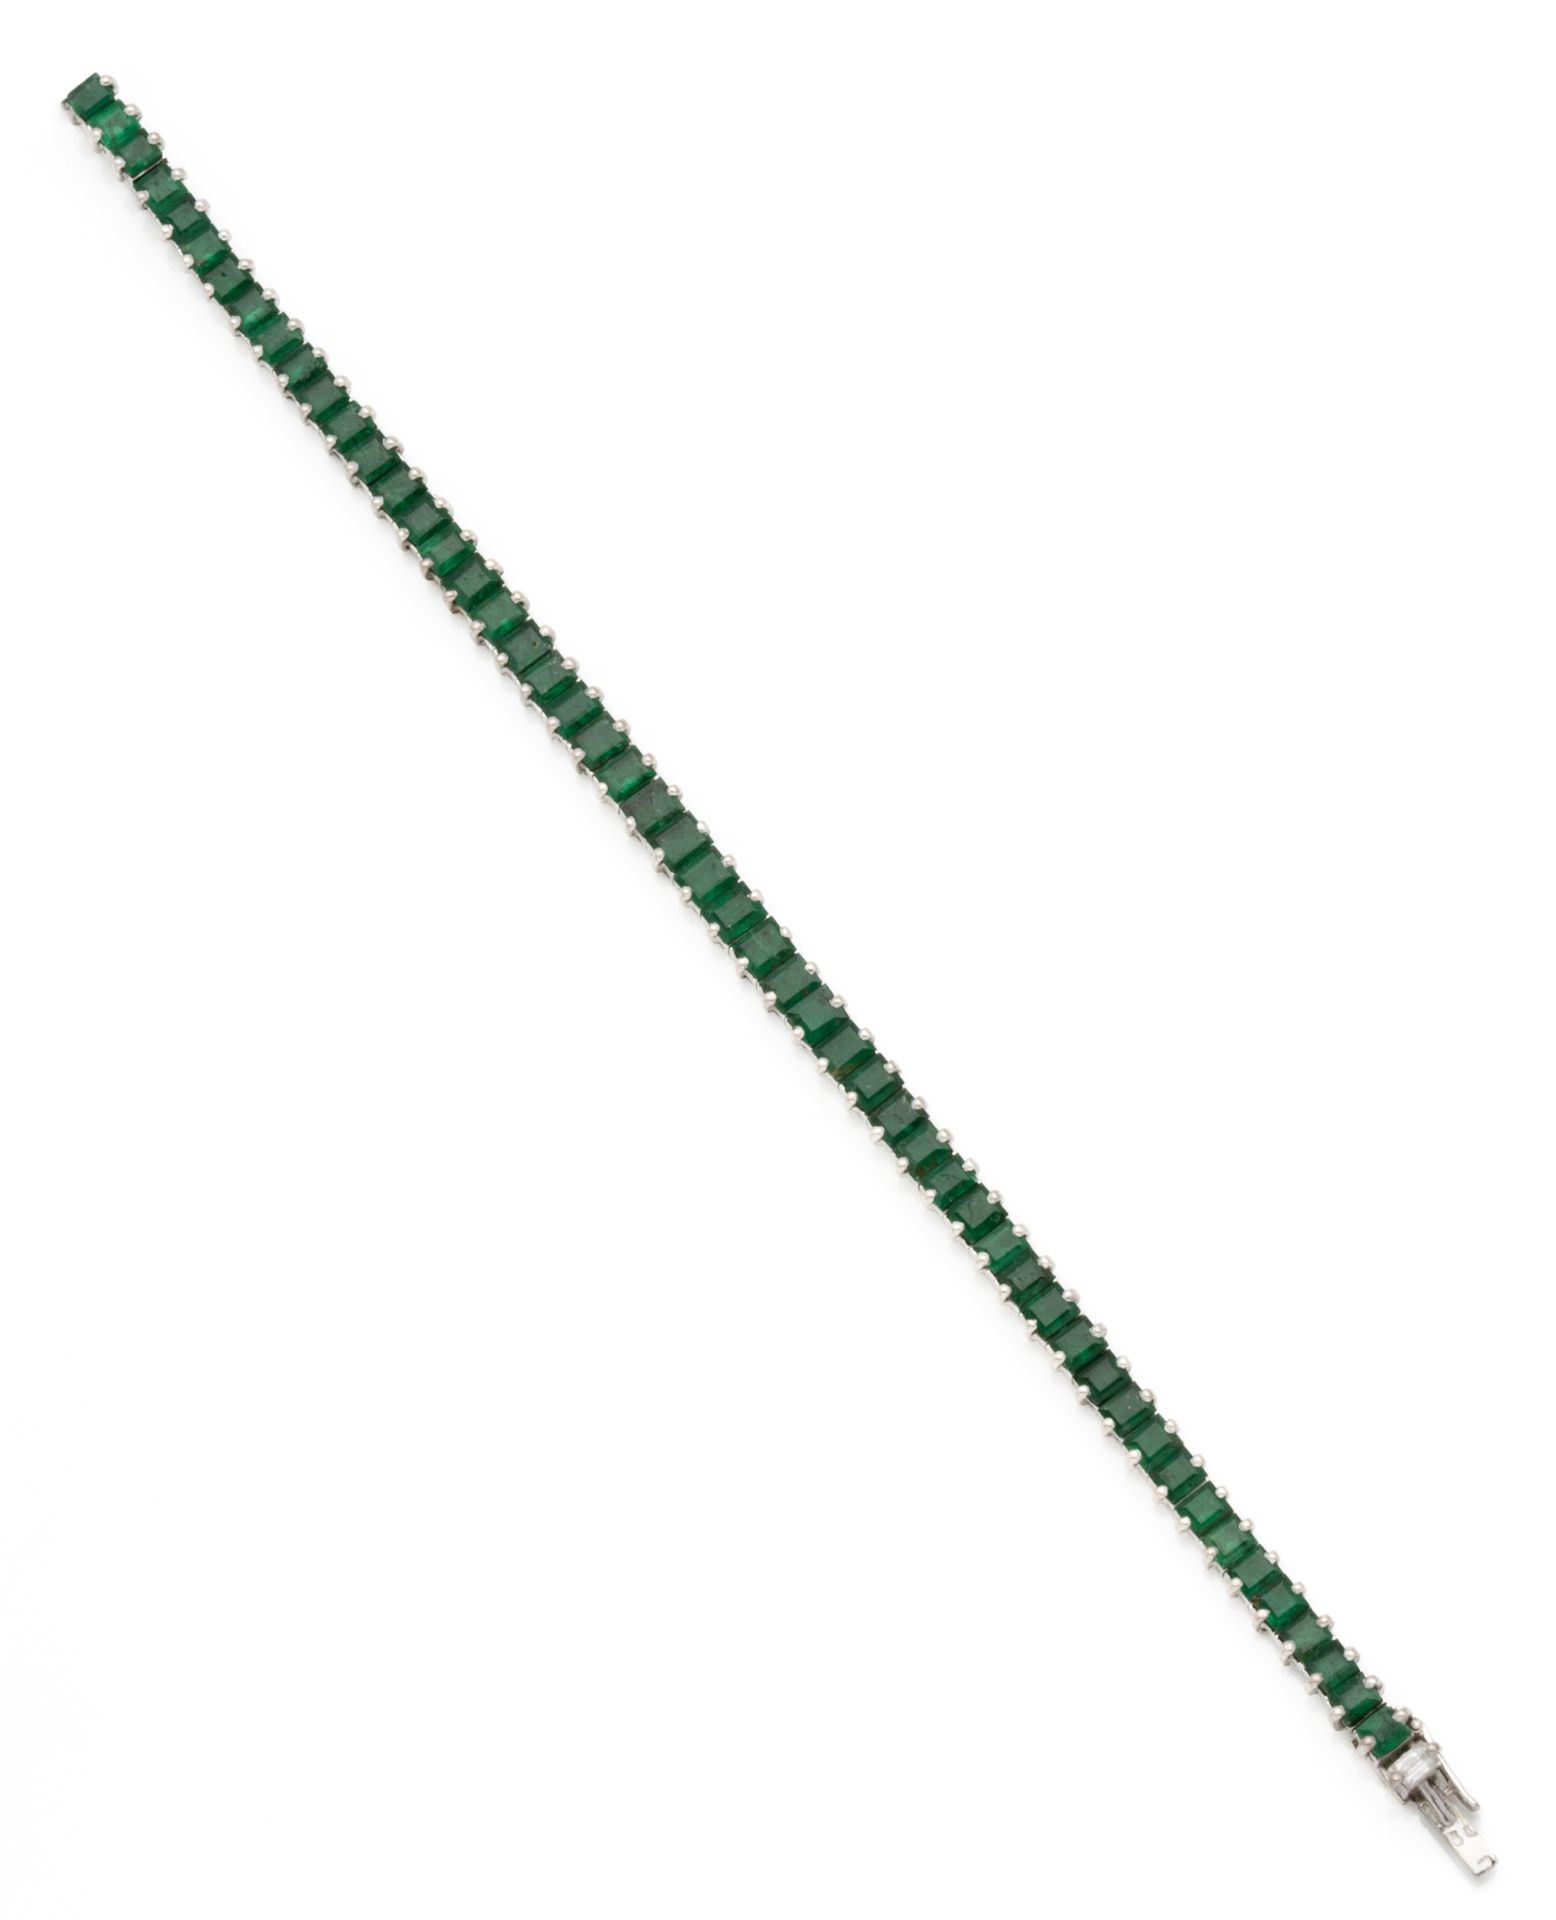 Null 18K（750/1000）白金网球手镯，镶嵌51颗长方形祖母绿。 

棘轮式安全扣，镶有一颗长方形切割钻石。

法国的工作。大师的标志。有待确定的PB&hellip;